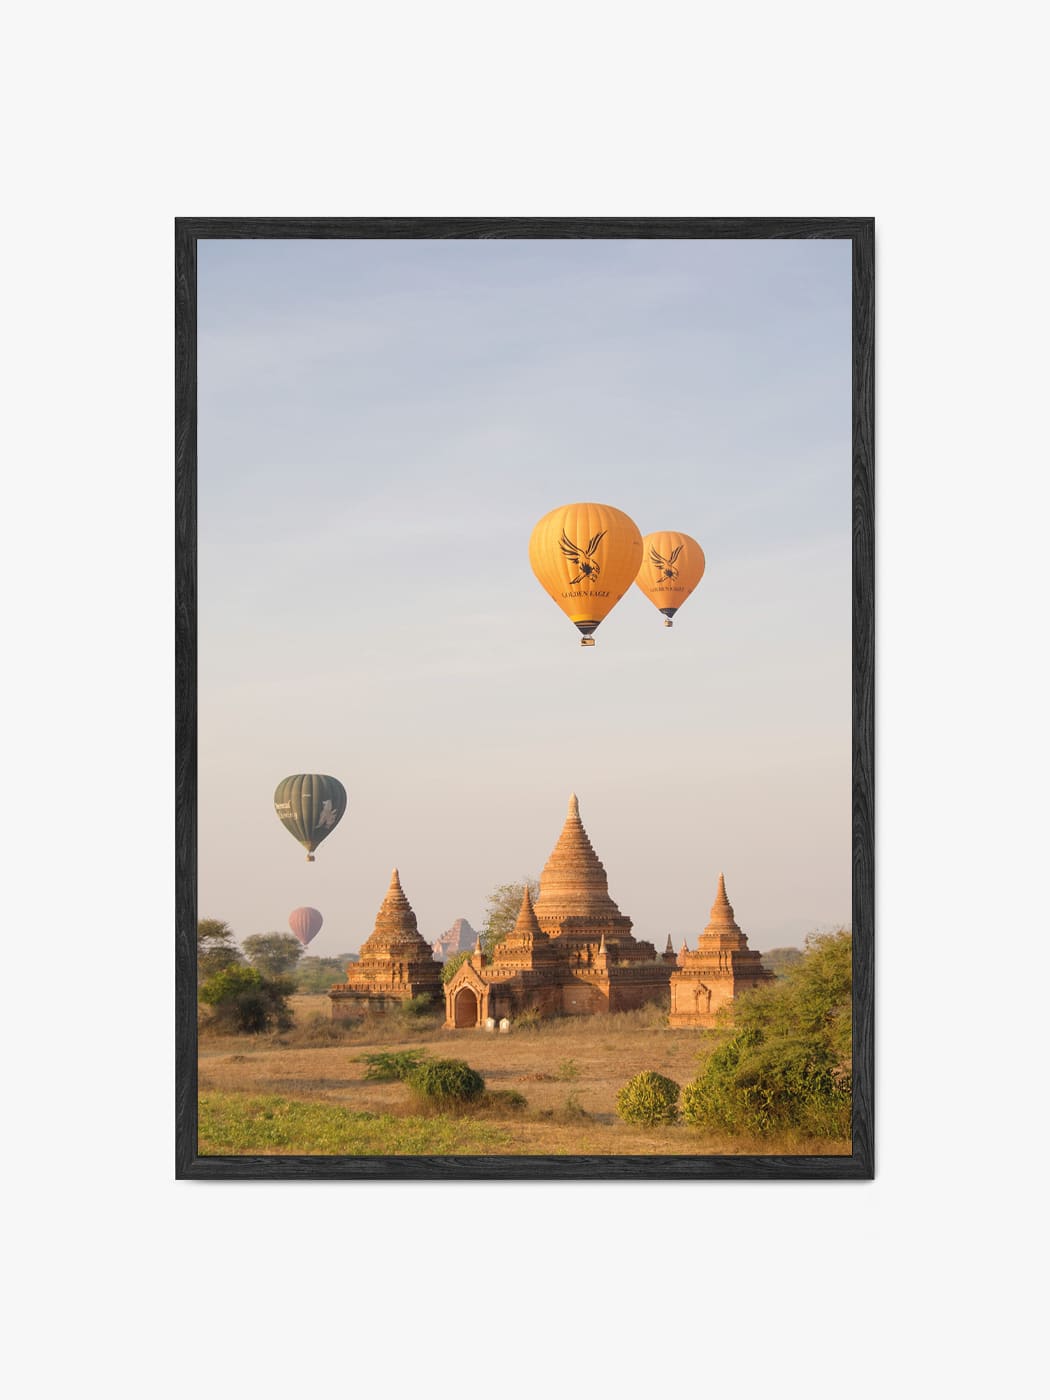 Obraz akustyczny ze zdjęcia - Balony nad Pagan w Birmie - Mateusz Kotlarski